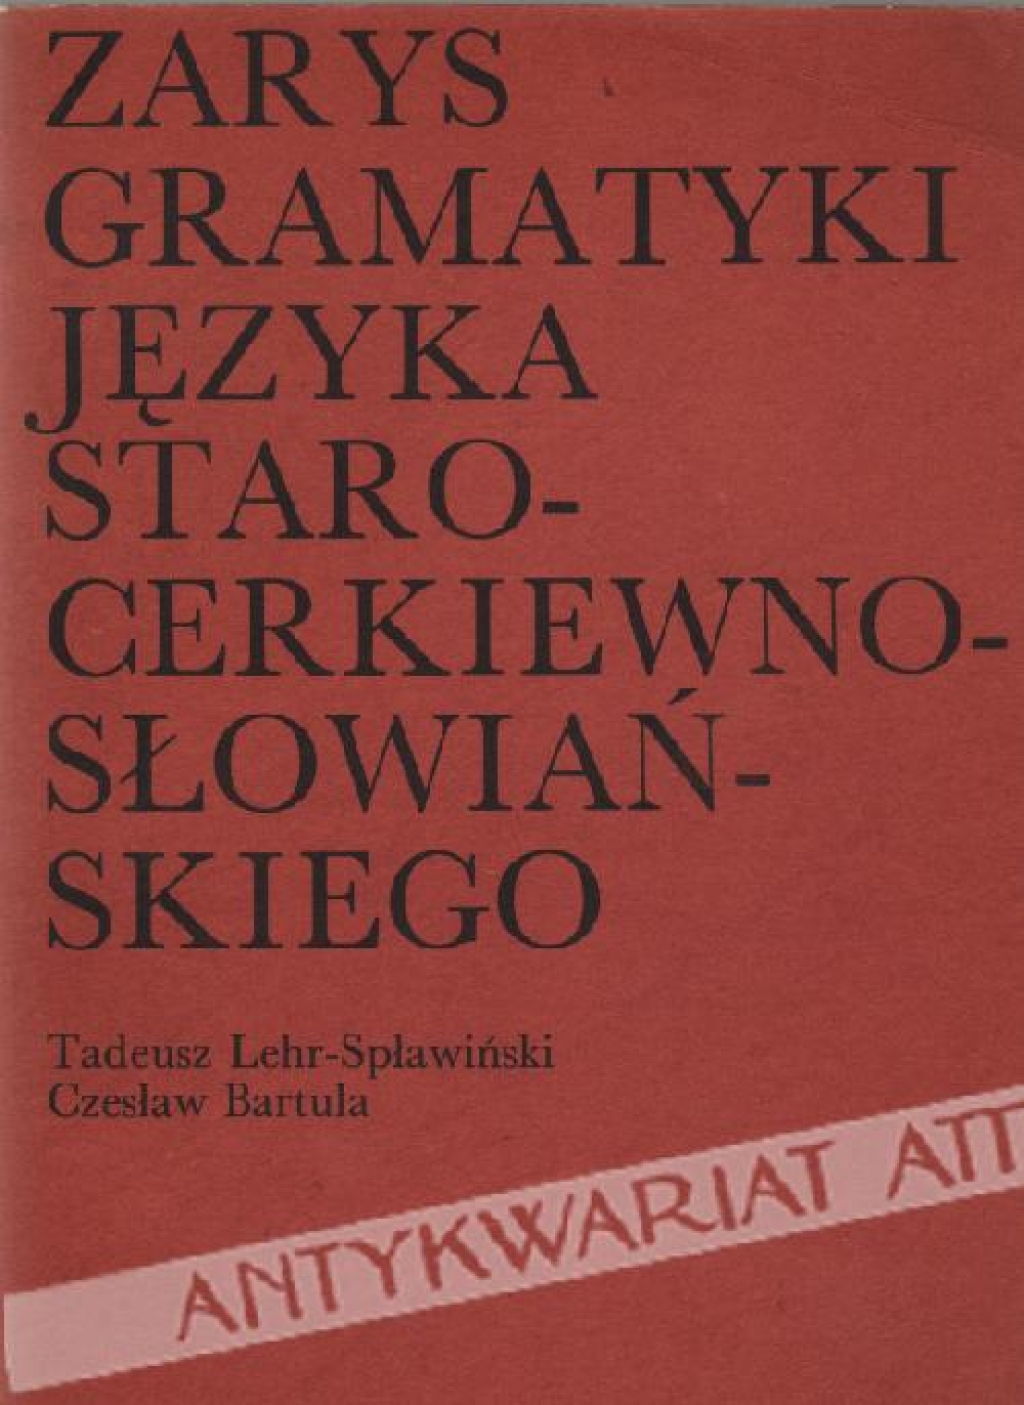 Zarys gramatyki języka staro-cerkiewno-słowiańskiego na tle porównawczym 